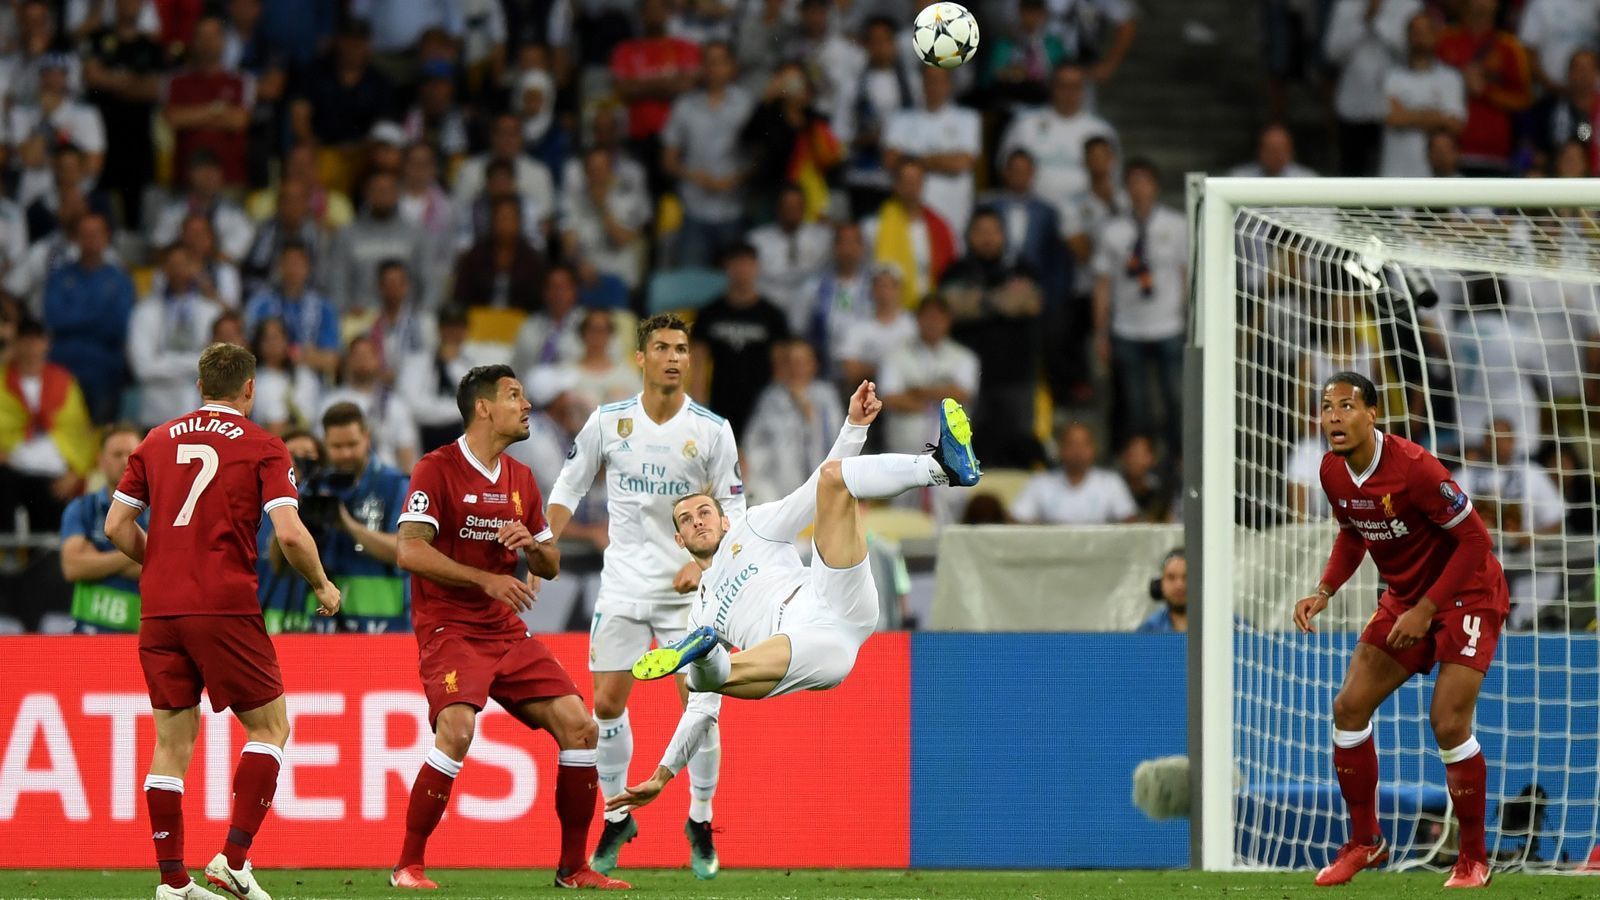 
                <strong>Gareth Bale (Real Madrid)</strong><br>
                Der wieselflinke Waliser kommt nach einer Stunde für Iso in die Partie und benötigt nur drei Minuten, um jeden Fan auf der Fußballwelt zu verzücken. Sein Fallrückzieher auf Marcelo-Flanke wird in jedem – ja wirklich: JEDEM – Rückblick ein Highlight sein. Bei seinem Hammer zum 3:1 benötigt er zwar die Schützenhilfe vom indisponierten Karius. Spätestens damit ist klar: Bale ist der Star des Abends. ran-Note: 1
              